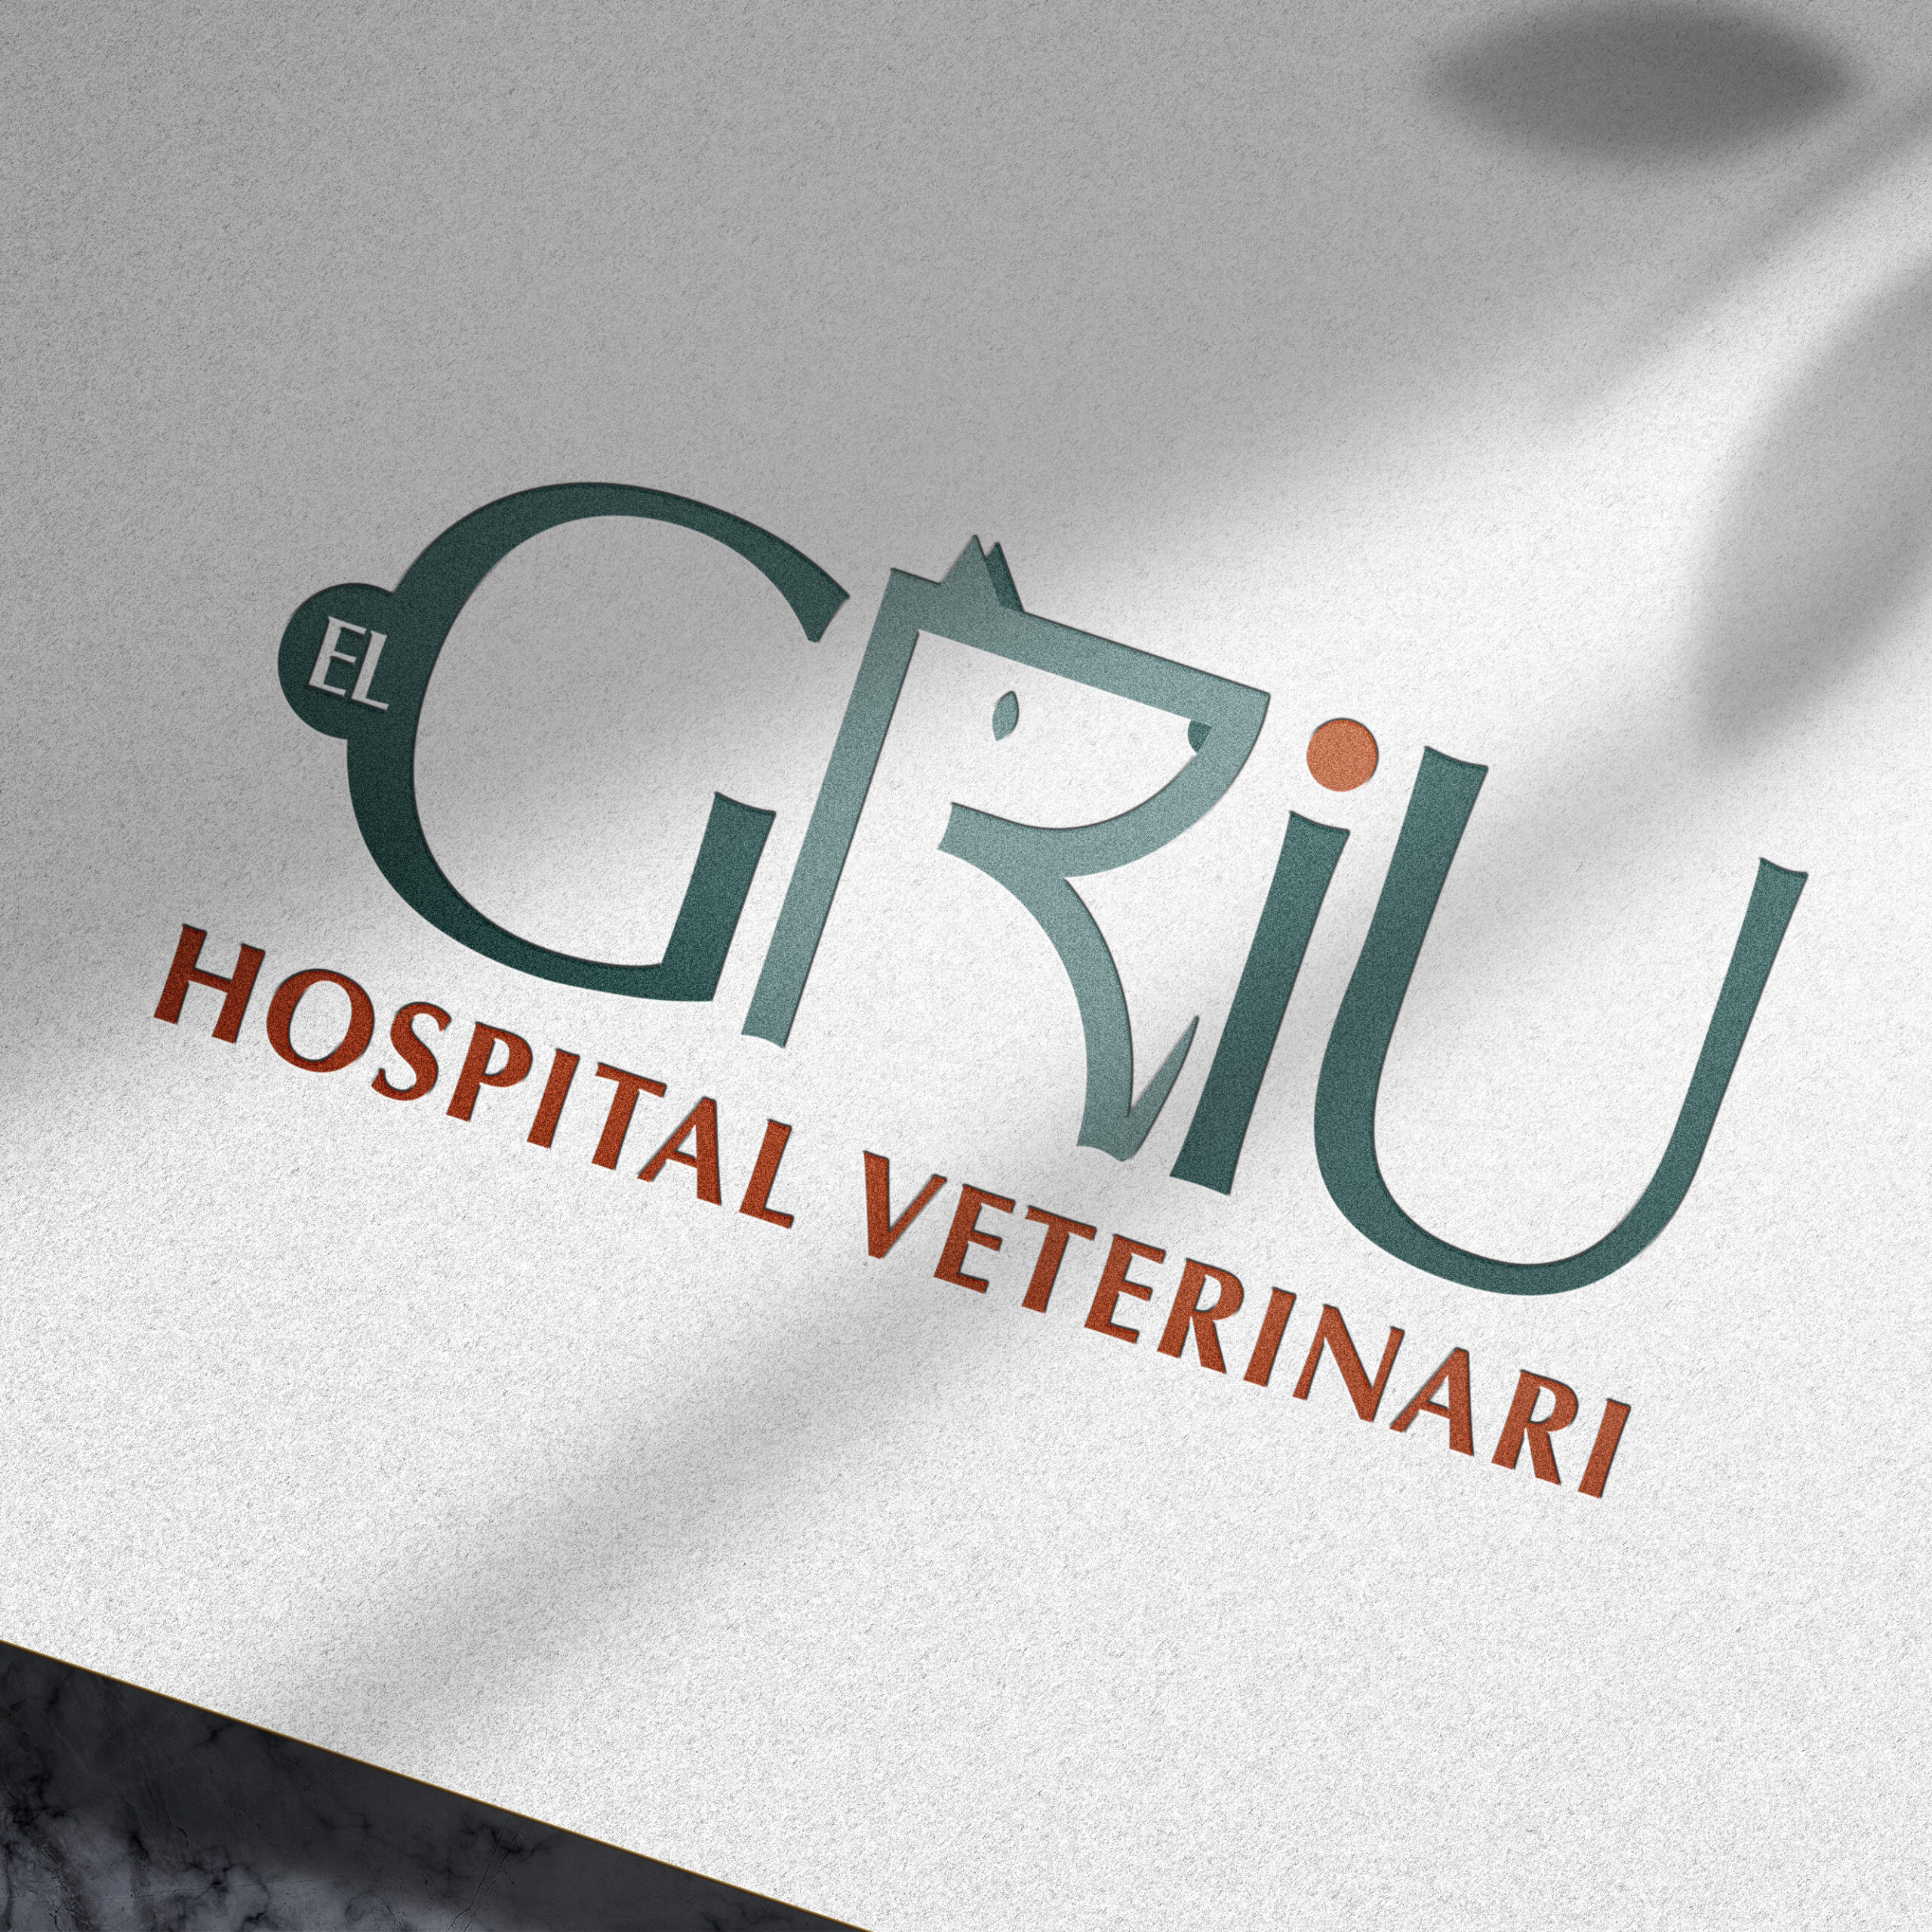 El Griu - Hospital veterinari